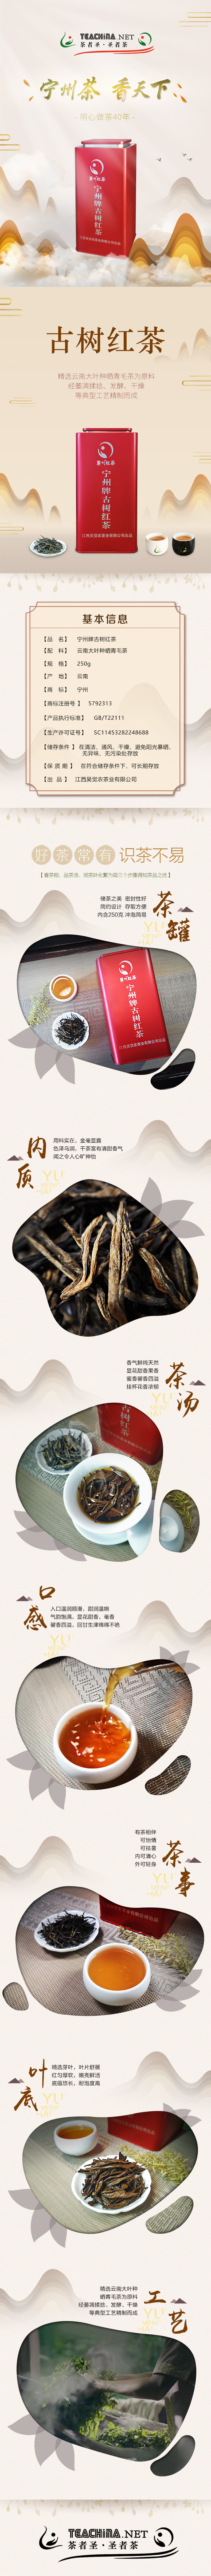 宁州牌古树红茶250g(图1)